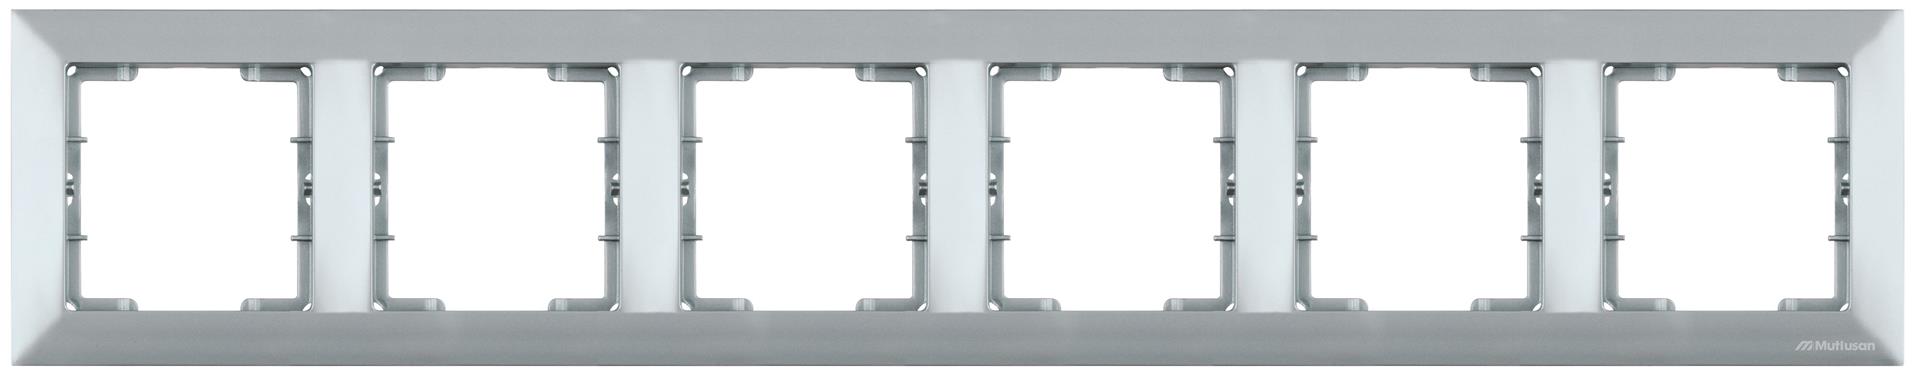 6 fach Rahmen horizontal Silber (CANDELA Metall Optik)